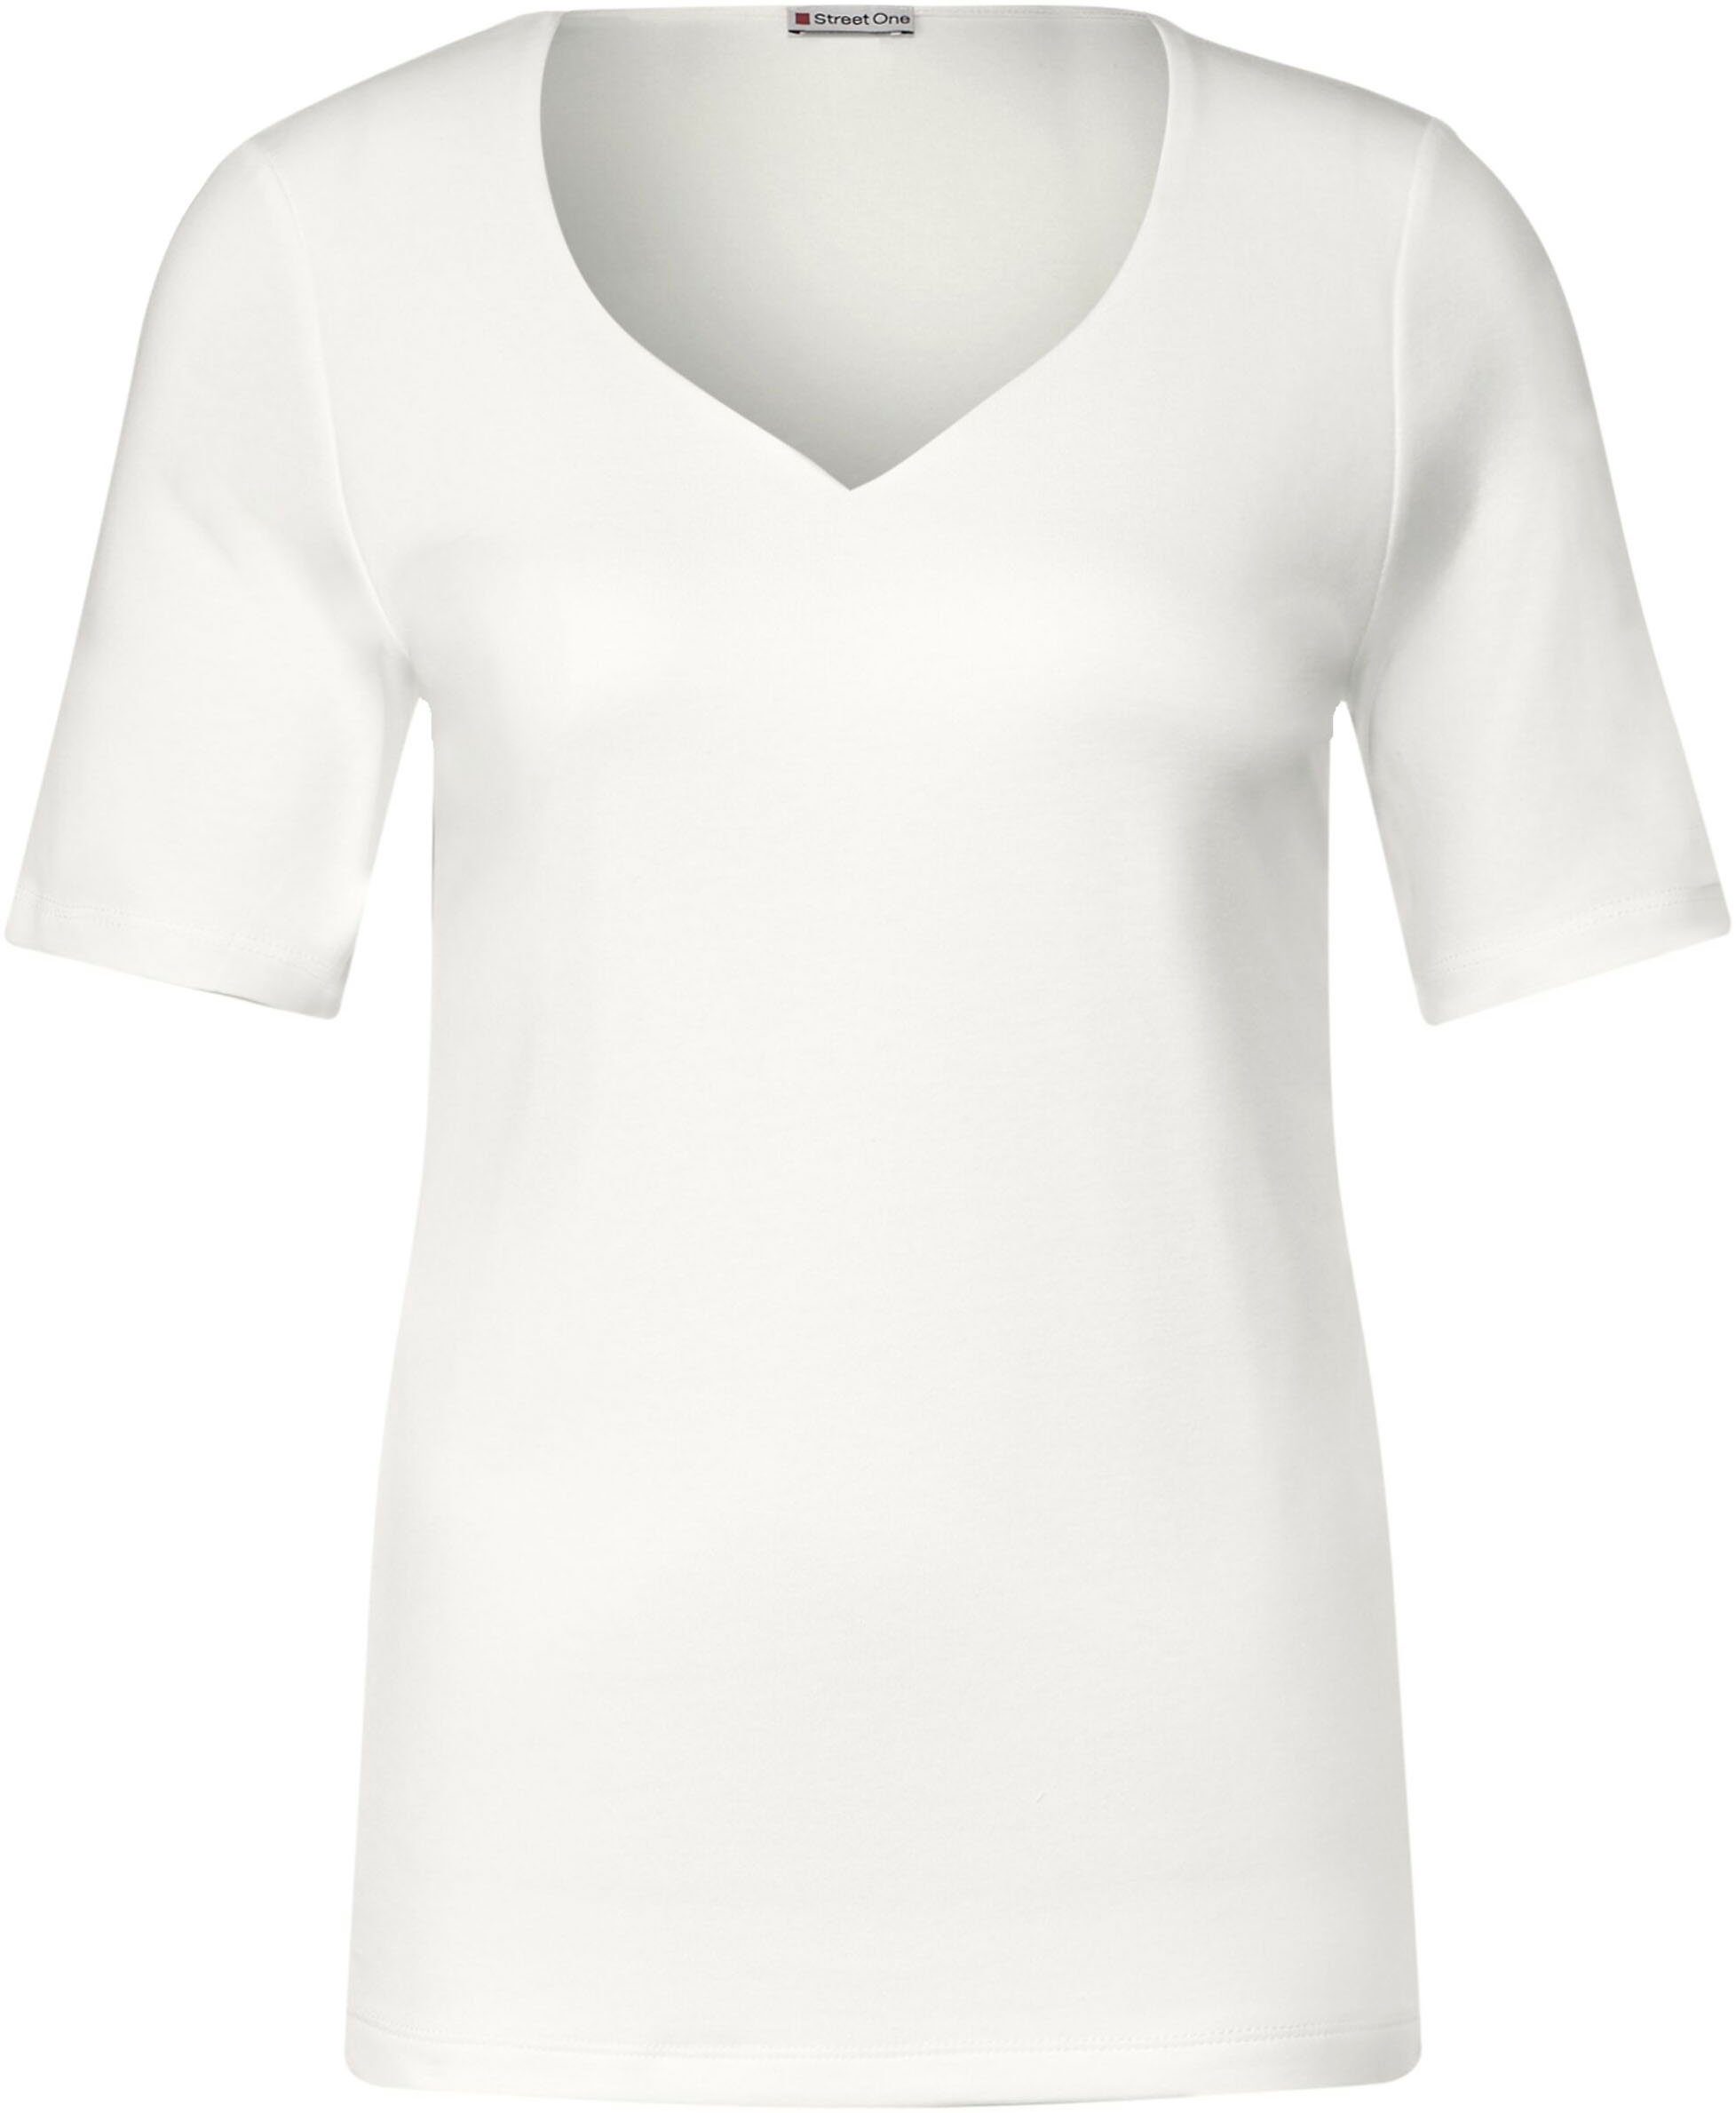 STREET mit white ONE T-Shirt Herz-Ausschnitt off